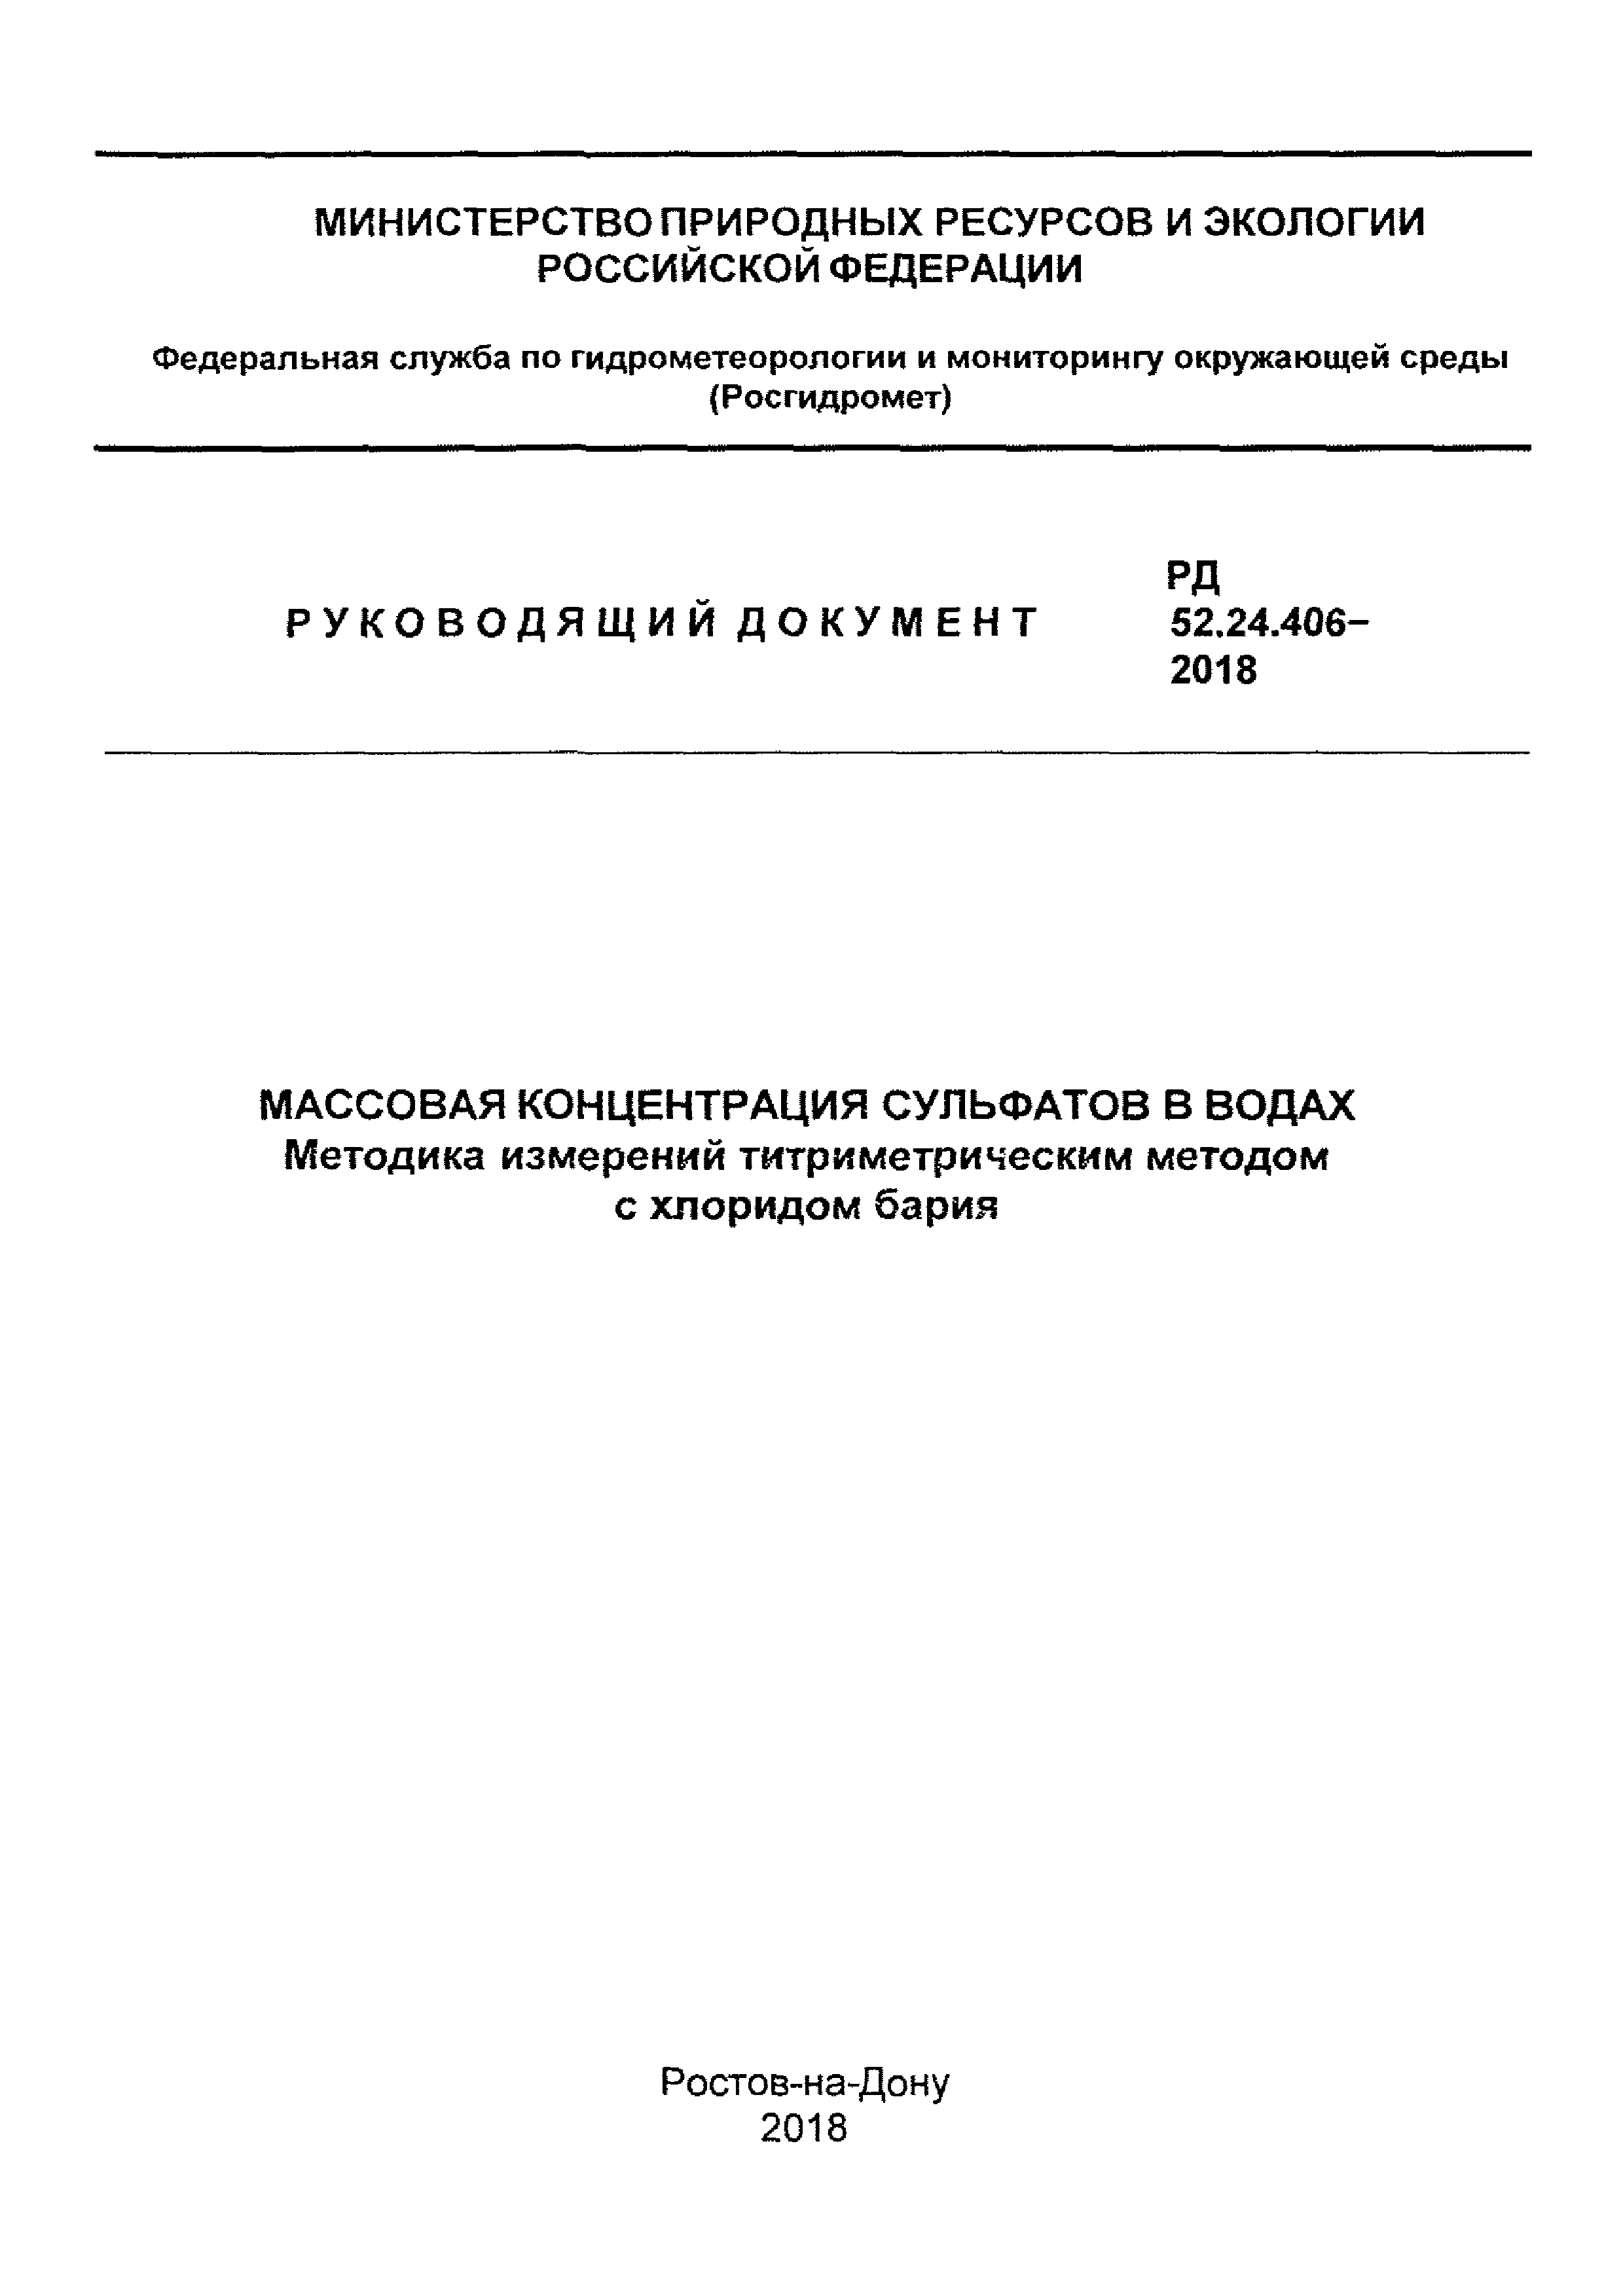 РД 52.24.406-2018